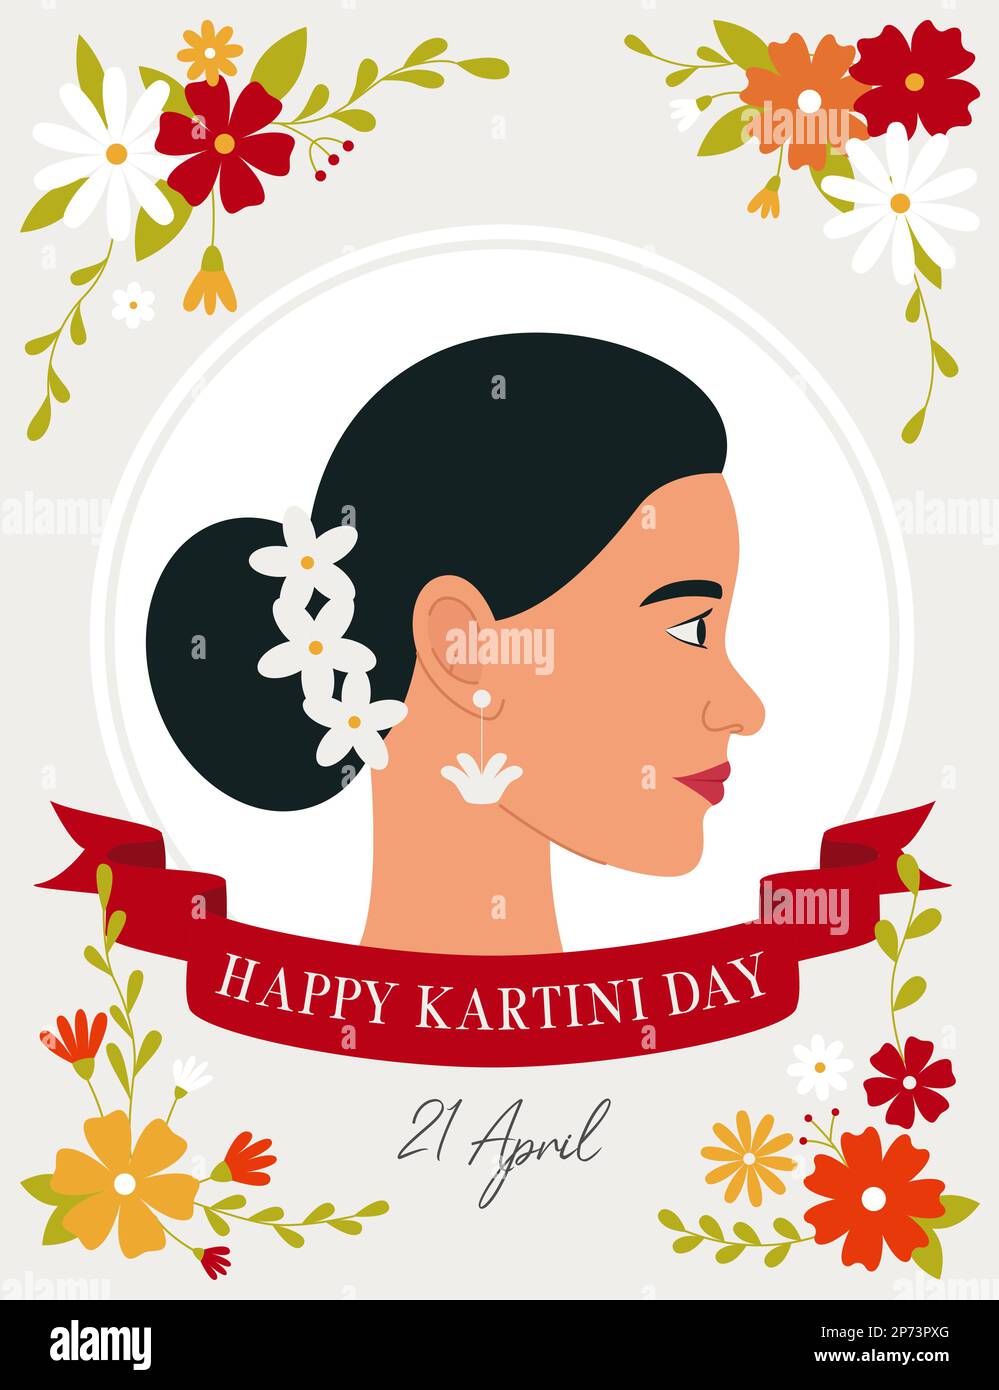 Einen schönen Kartini-Tag. Profil einer dunkelhaarigen Frau, umgeben von Blumen. Ein indonesischer Feiertag. Kartini ist eine indonesische Heldin. Flachvektor illustr Stock Vektor